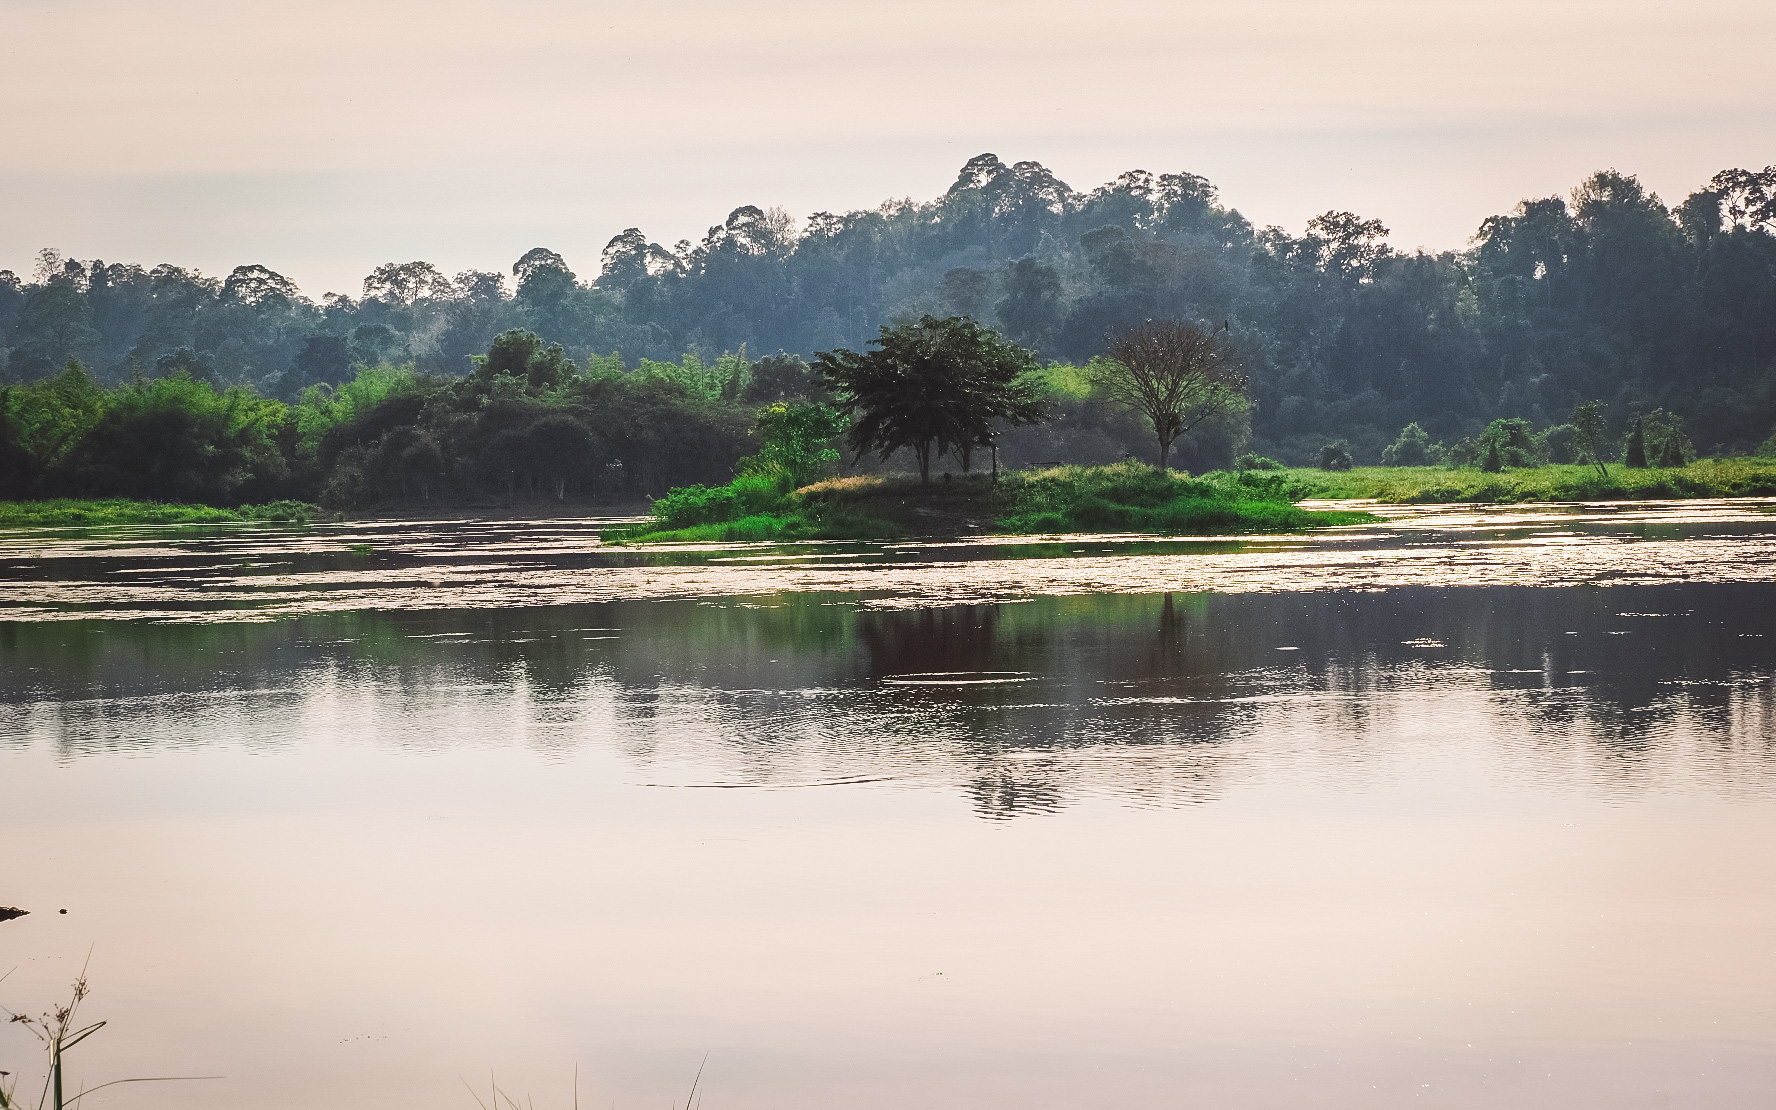 Danh lục xanh: Giải pháp bảo tồn bền vững cho Vườn quốc gia Cát Tiên